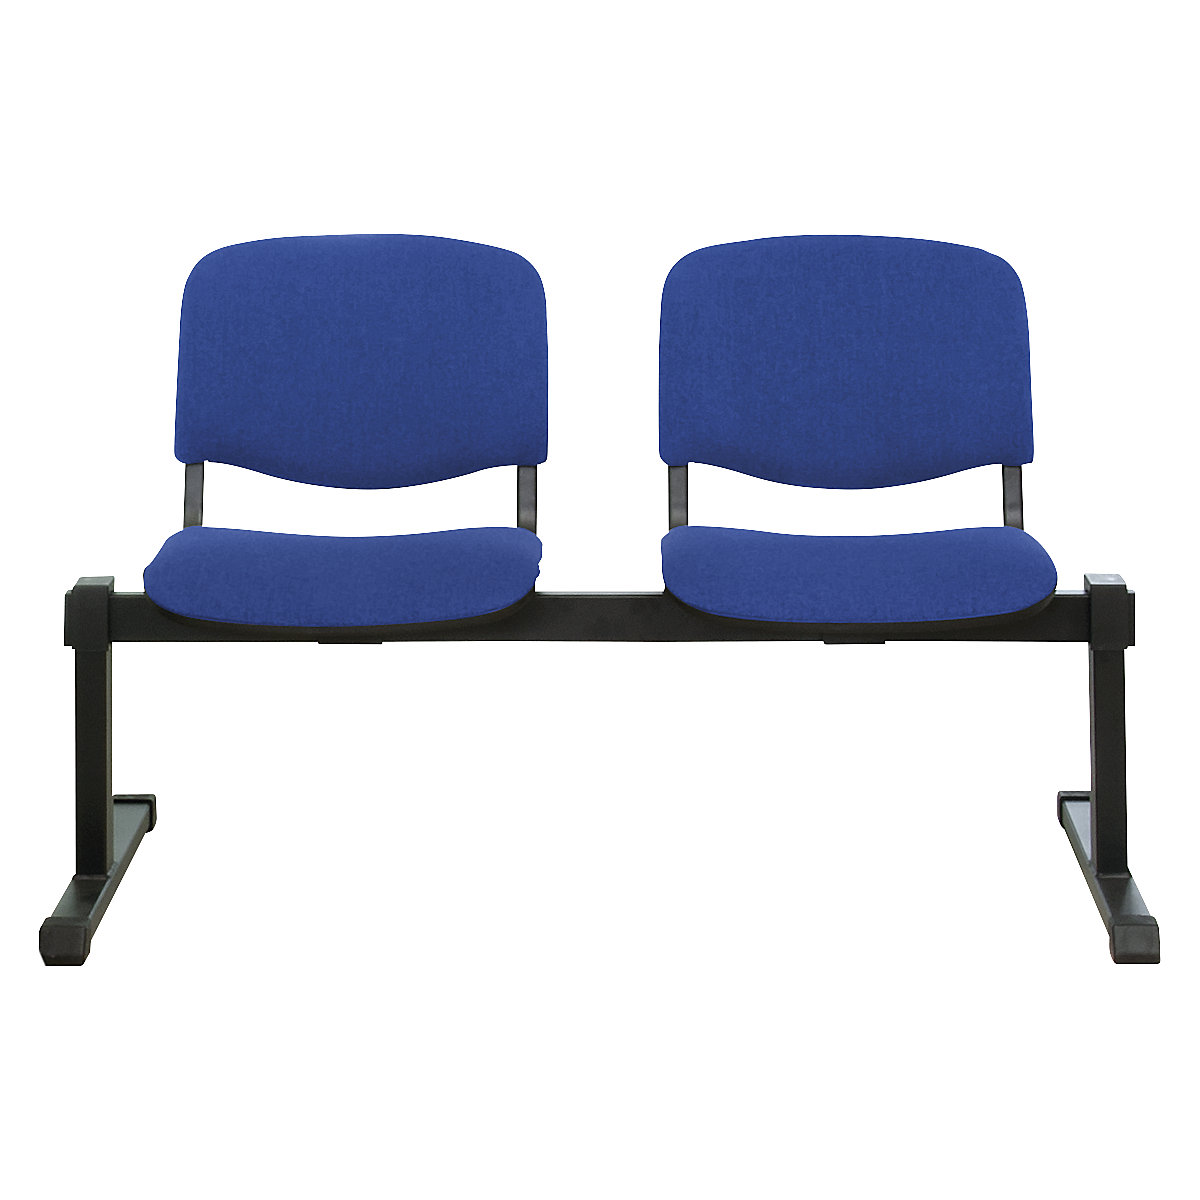 Sièges sur poutre, sans table, 2 sièges, habillage bleu-3